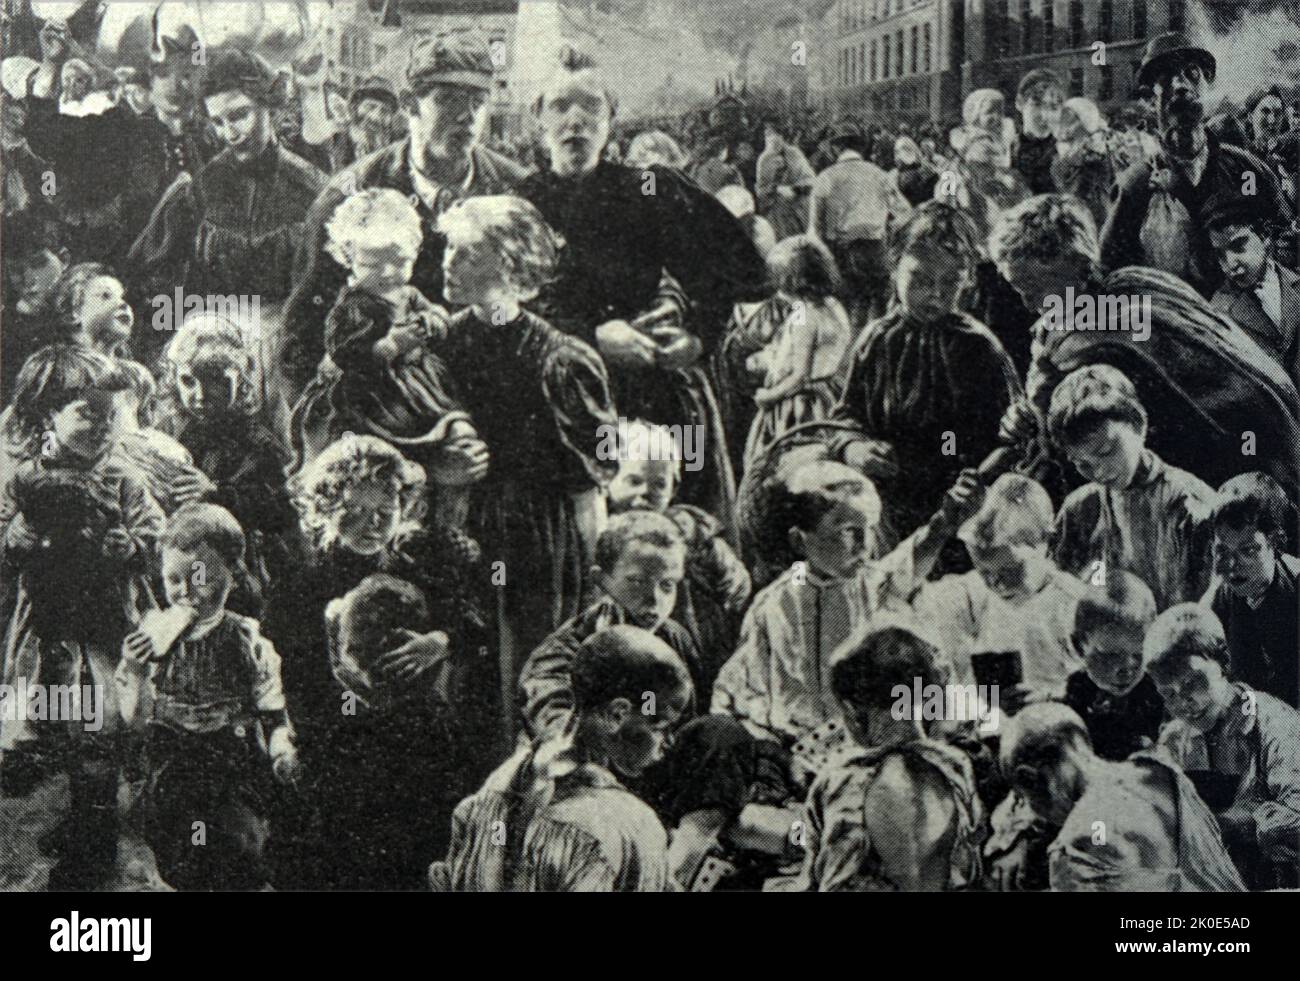 Las edades de los trabajadores - Tríptico - 1895-1897 (panel central) de Leon-Henri-Marie Frederic (1856 - 1940), pintor simbolista belga. Sus primeras pinturas unieron el misticismo cristiano con temas panteístas. Foto de stock